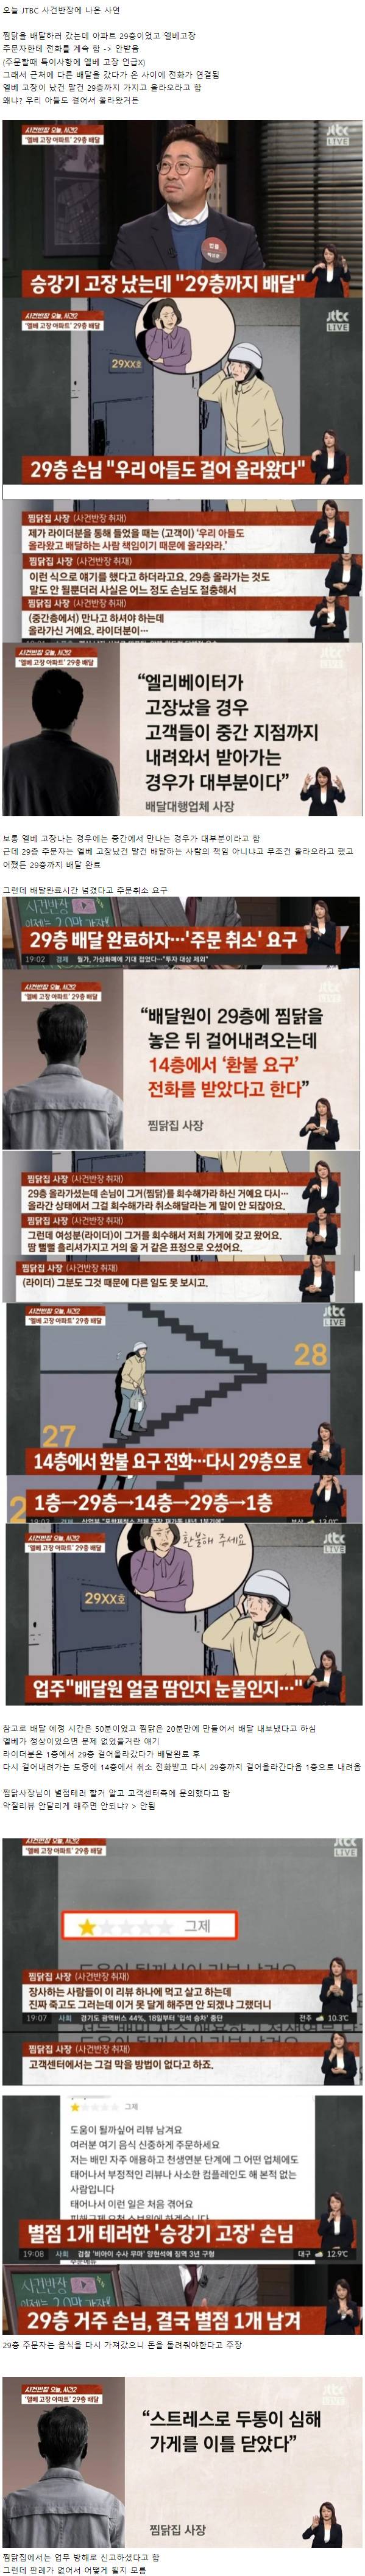 엘베 고장 29층 배달 논란